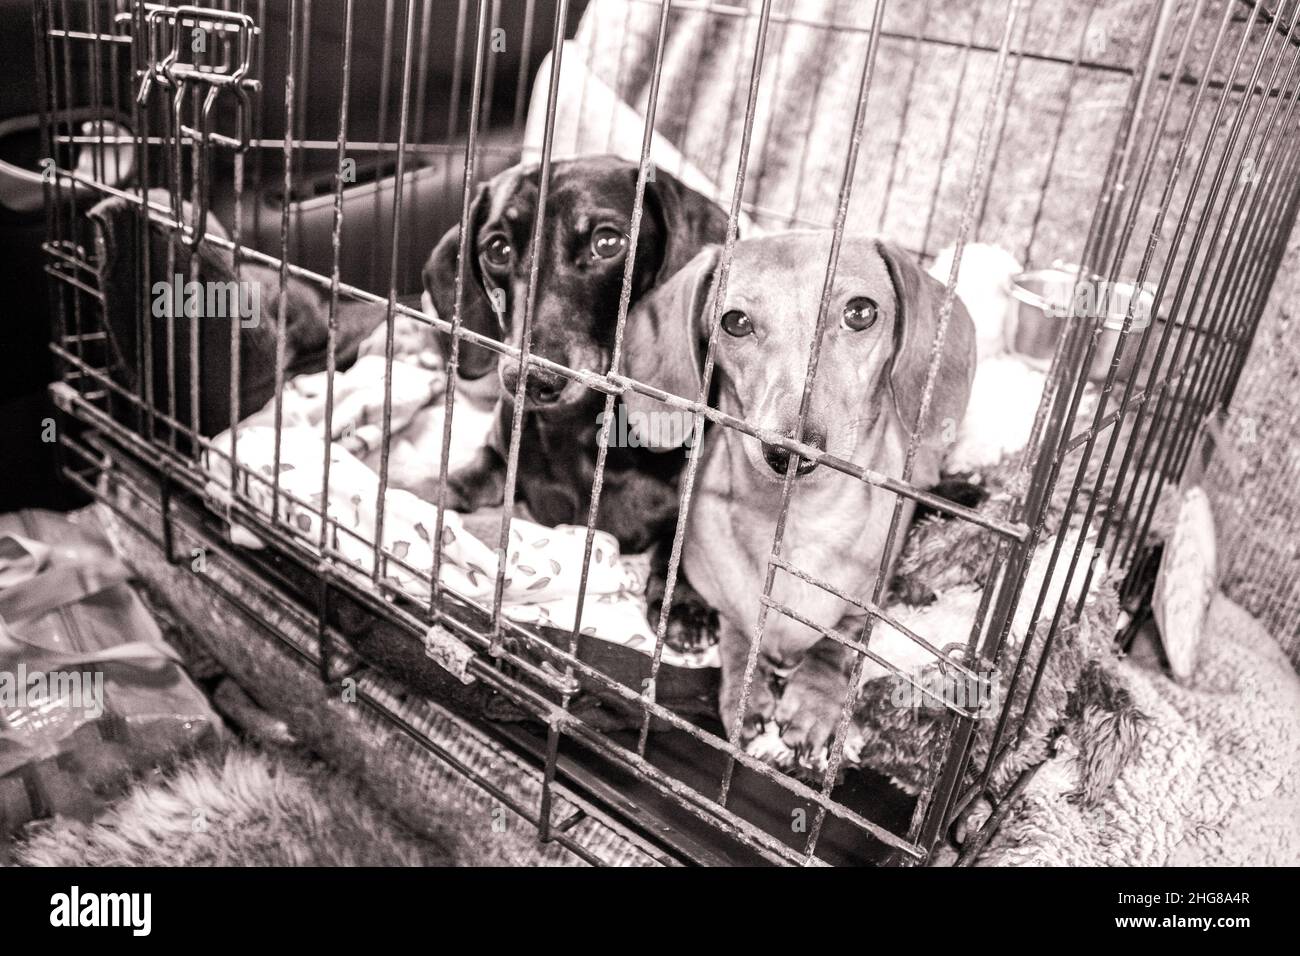 Zwei Miniatur-Dachshunds in einem metallenen Hundekäfig, die unterwegs sind oder gerettet wurden. Stockfoto